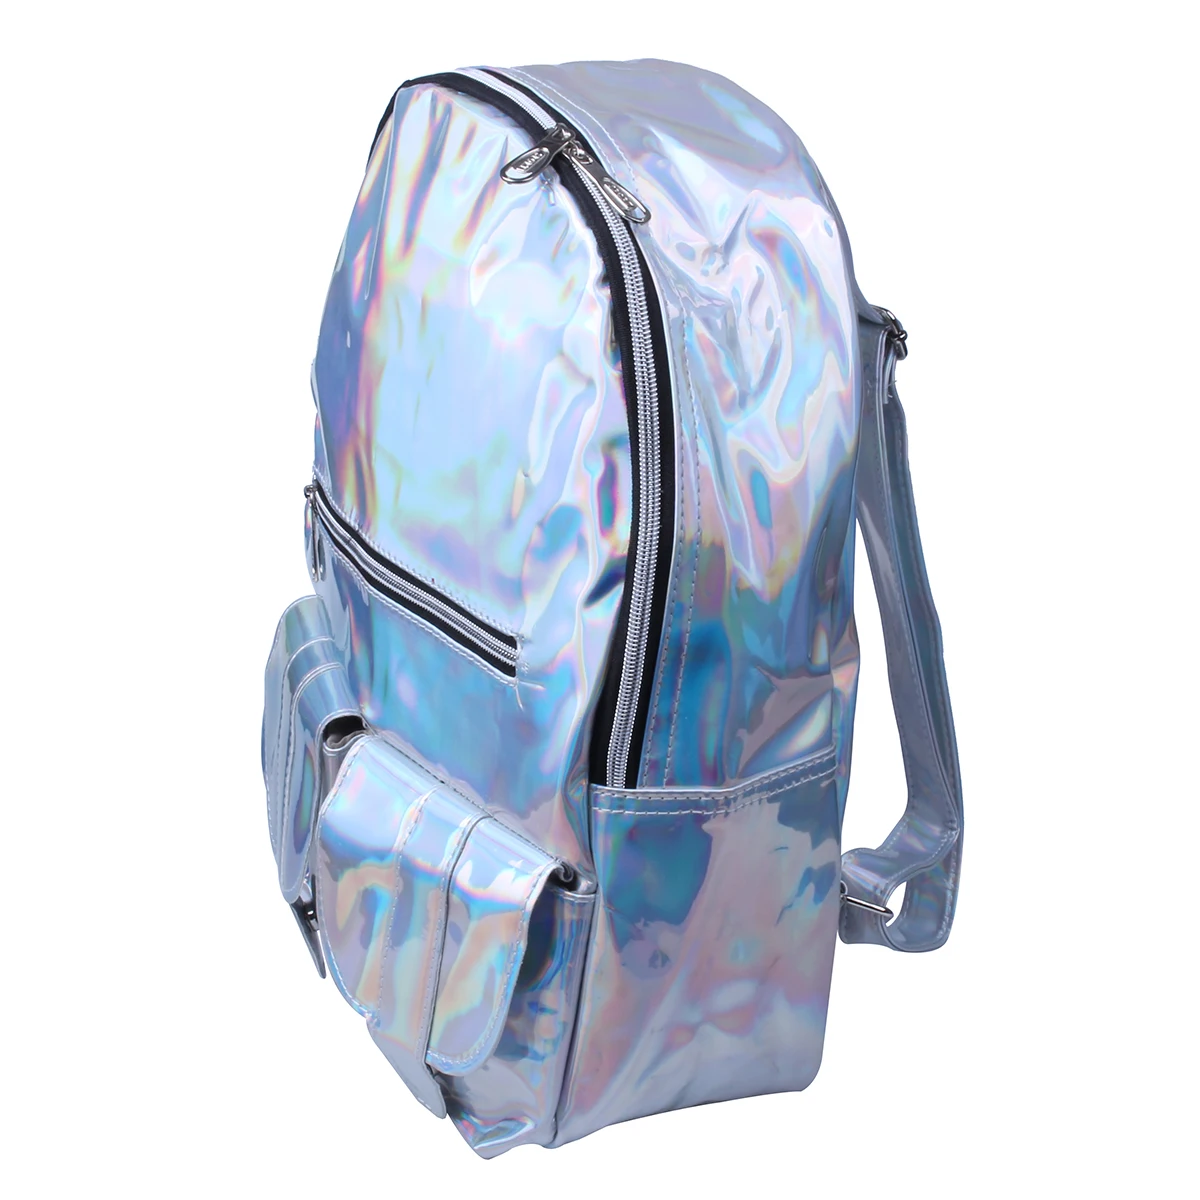 Texu/голографическая gammaray голограмма женские рюкзаки для девочек-подростков серебро лазера кожаная сумка голографические школьные сумки